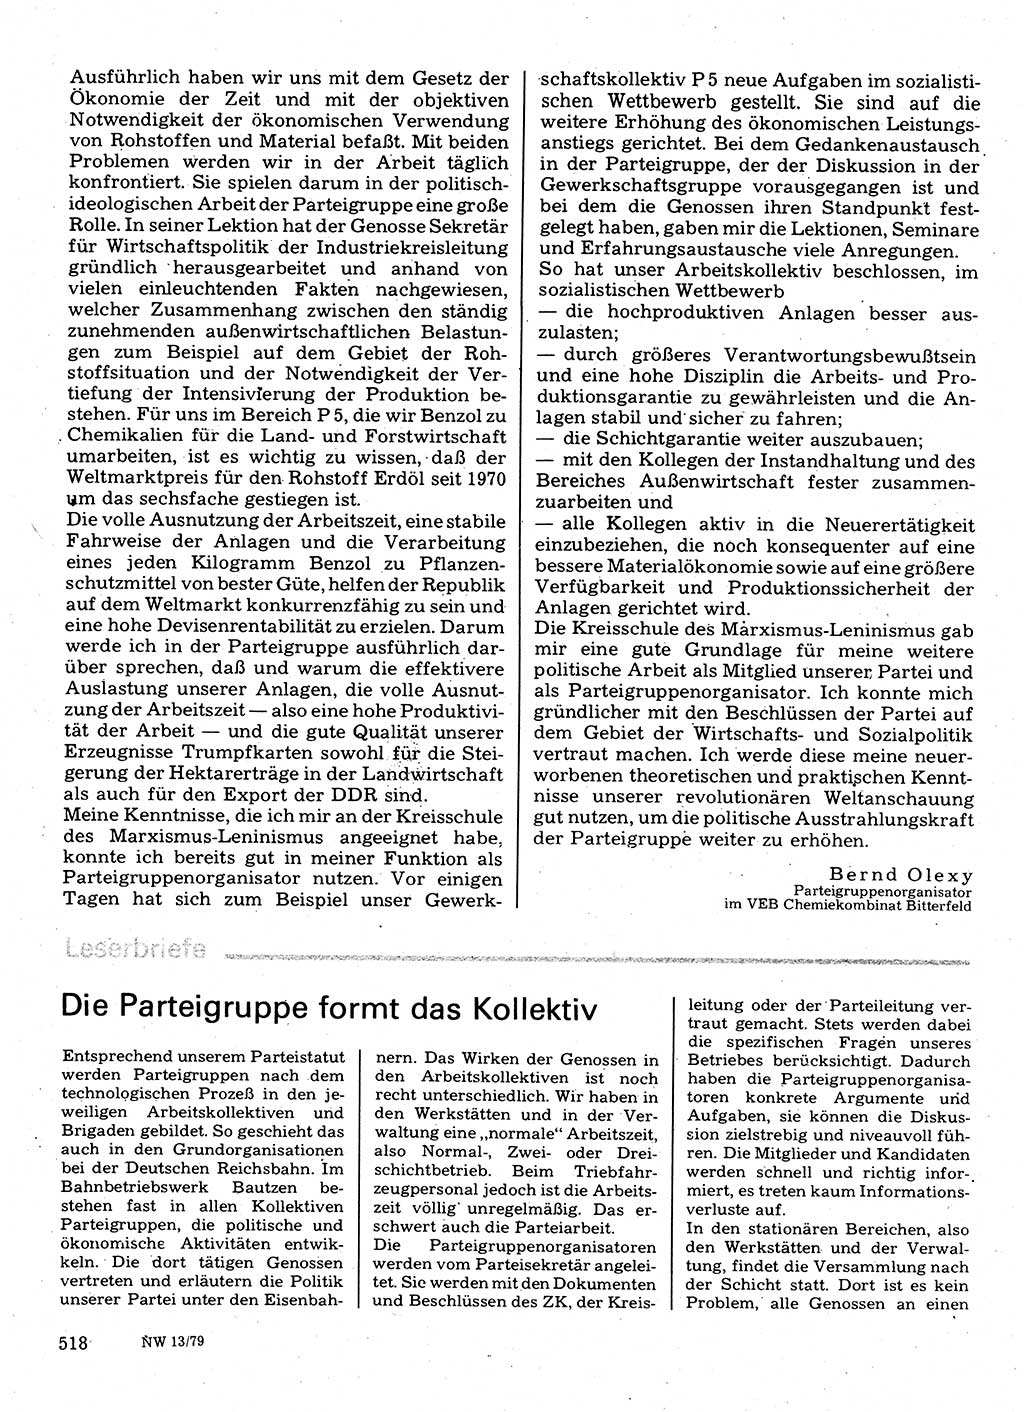 Neuer Weg (NW), Organ des Zentralkomitees (ZK) der SED (Sozialistische Einheitspartei Deutschlands) für Fragen des Parteilebens, 34. Jahrgang [Deutsche Demokratische Republik (DDR)] 1979, Seite 518 (NW ZK SED DDR 1979, S. 518)